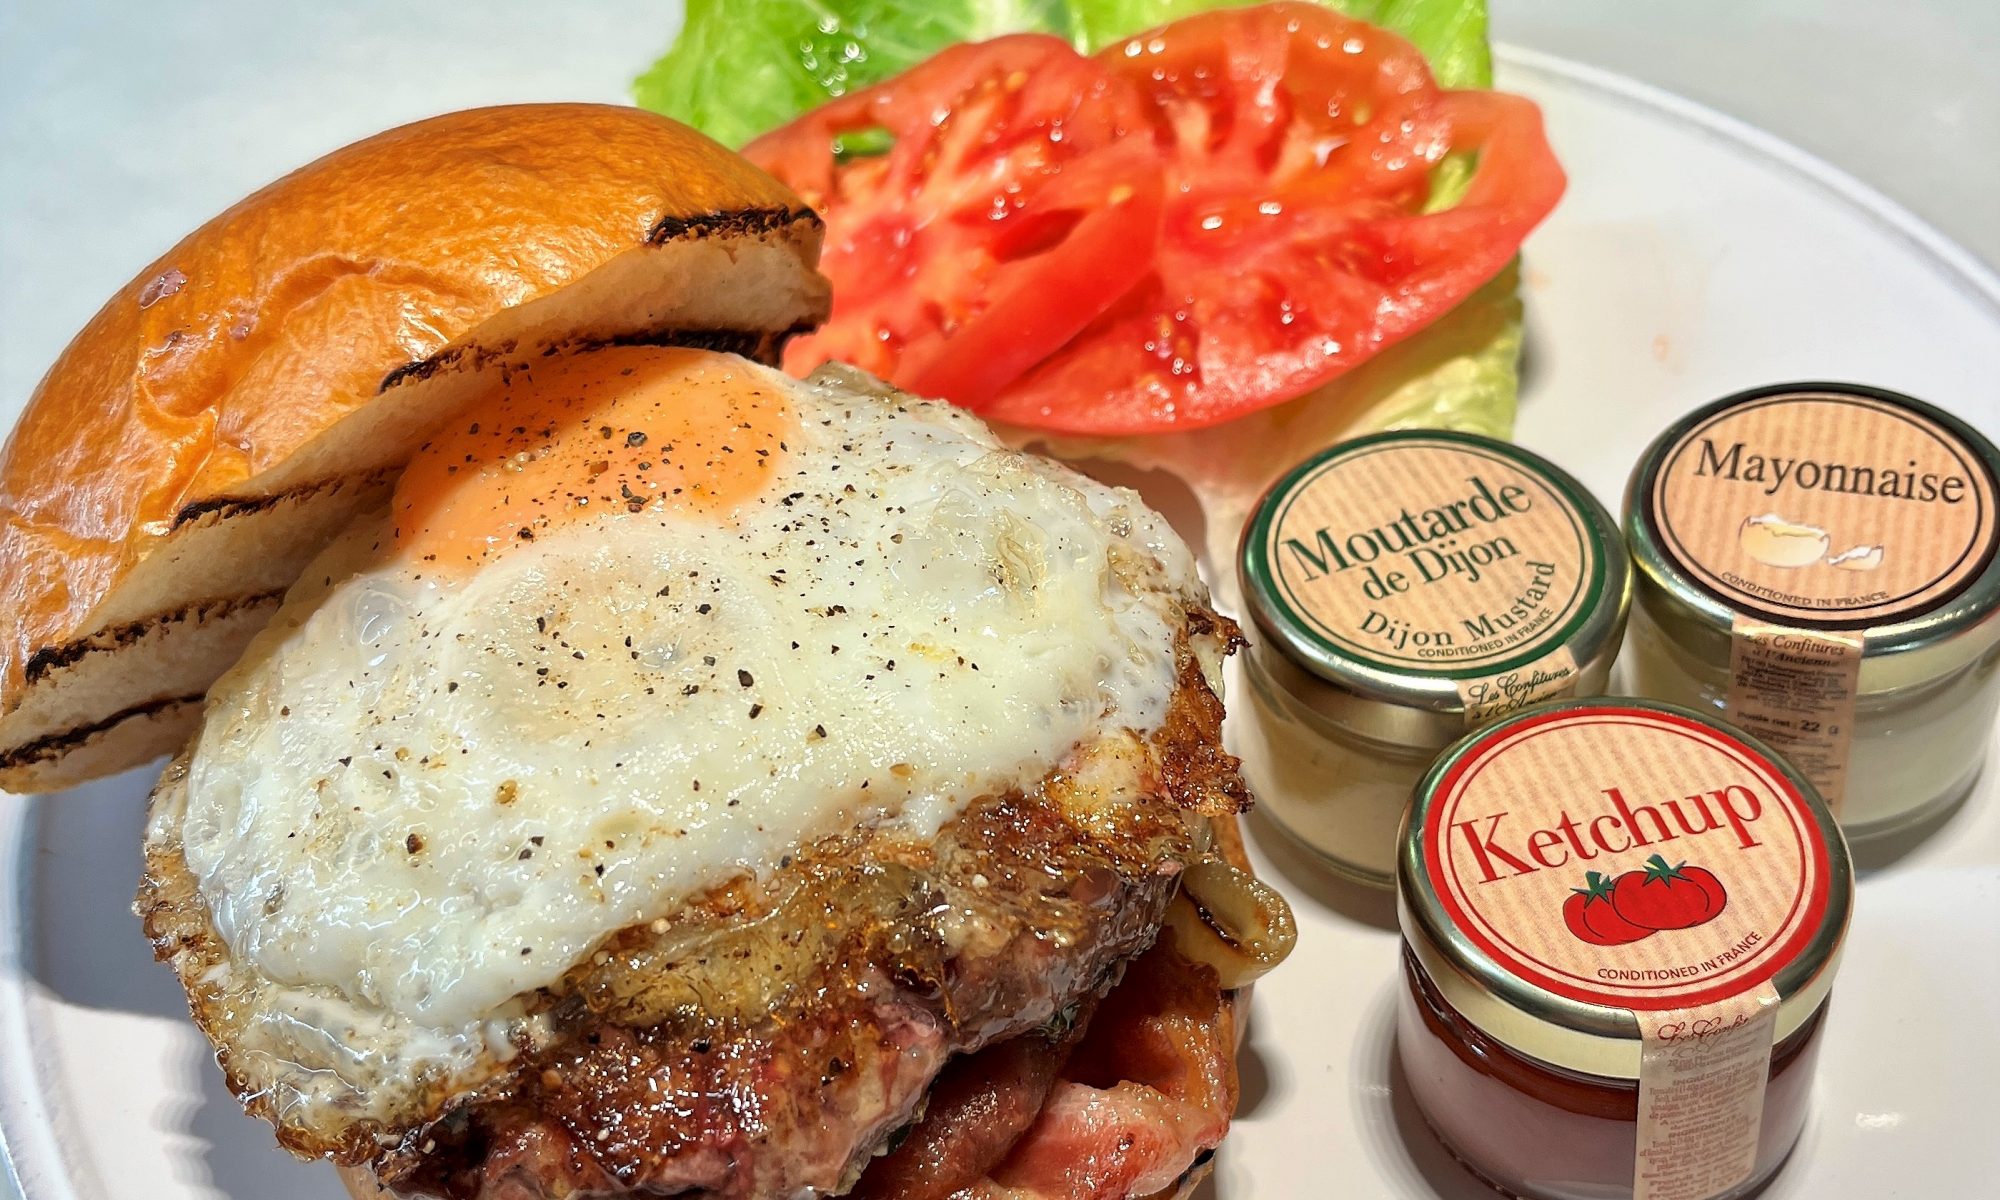 La mejor hamburguesa de Andorra. Nuestro producto estrella y exclusivo en Andorra, sin lugar a dudas, es nuestra Hamburguesa de Wagyu KRAM BURGER.